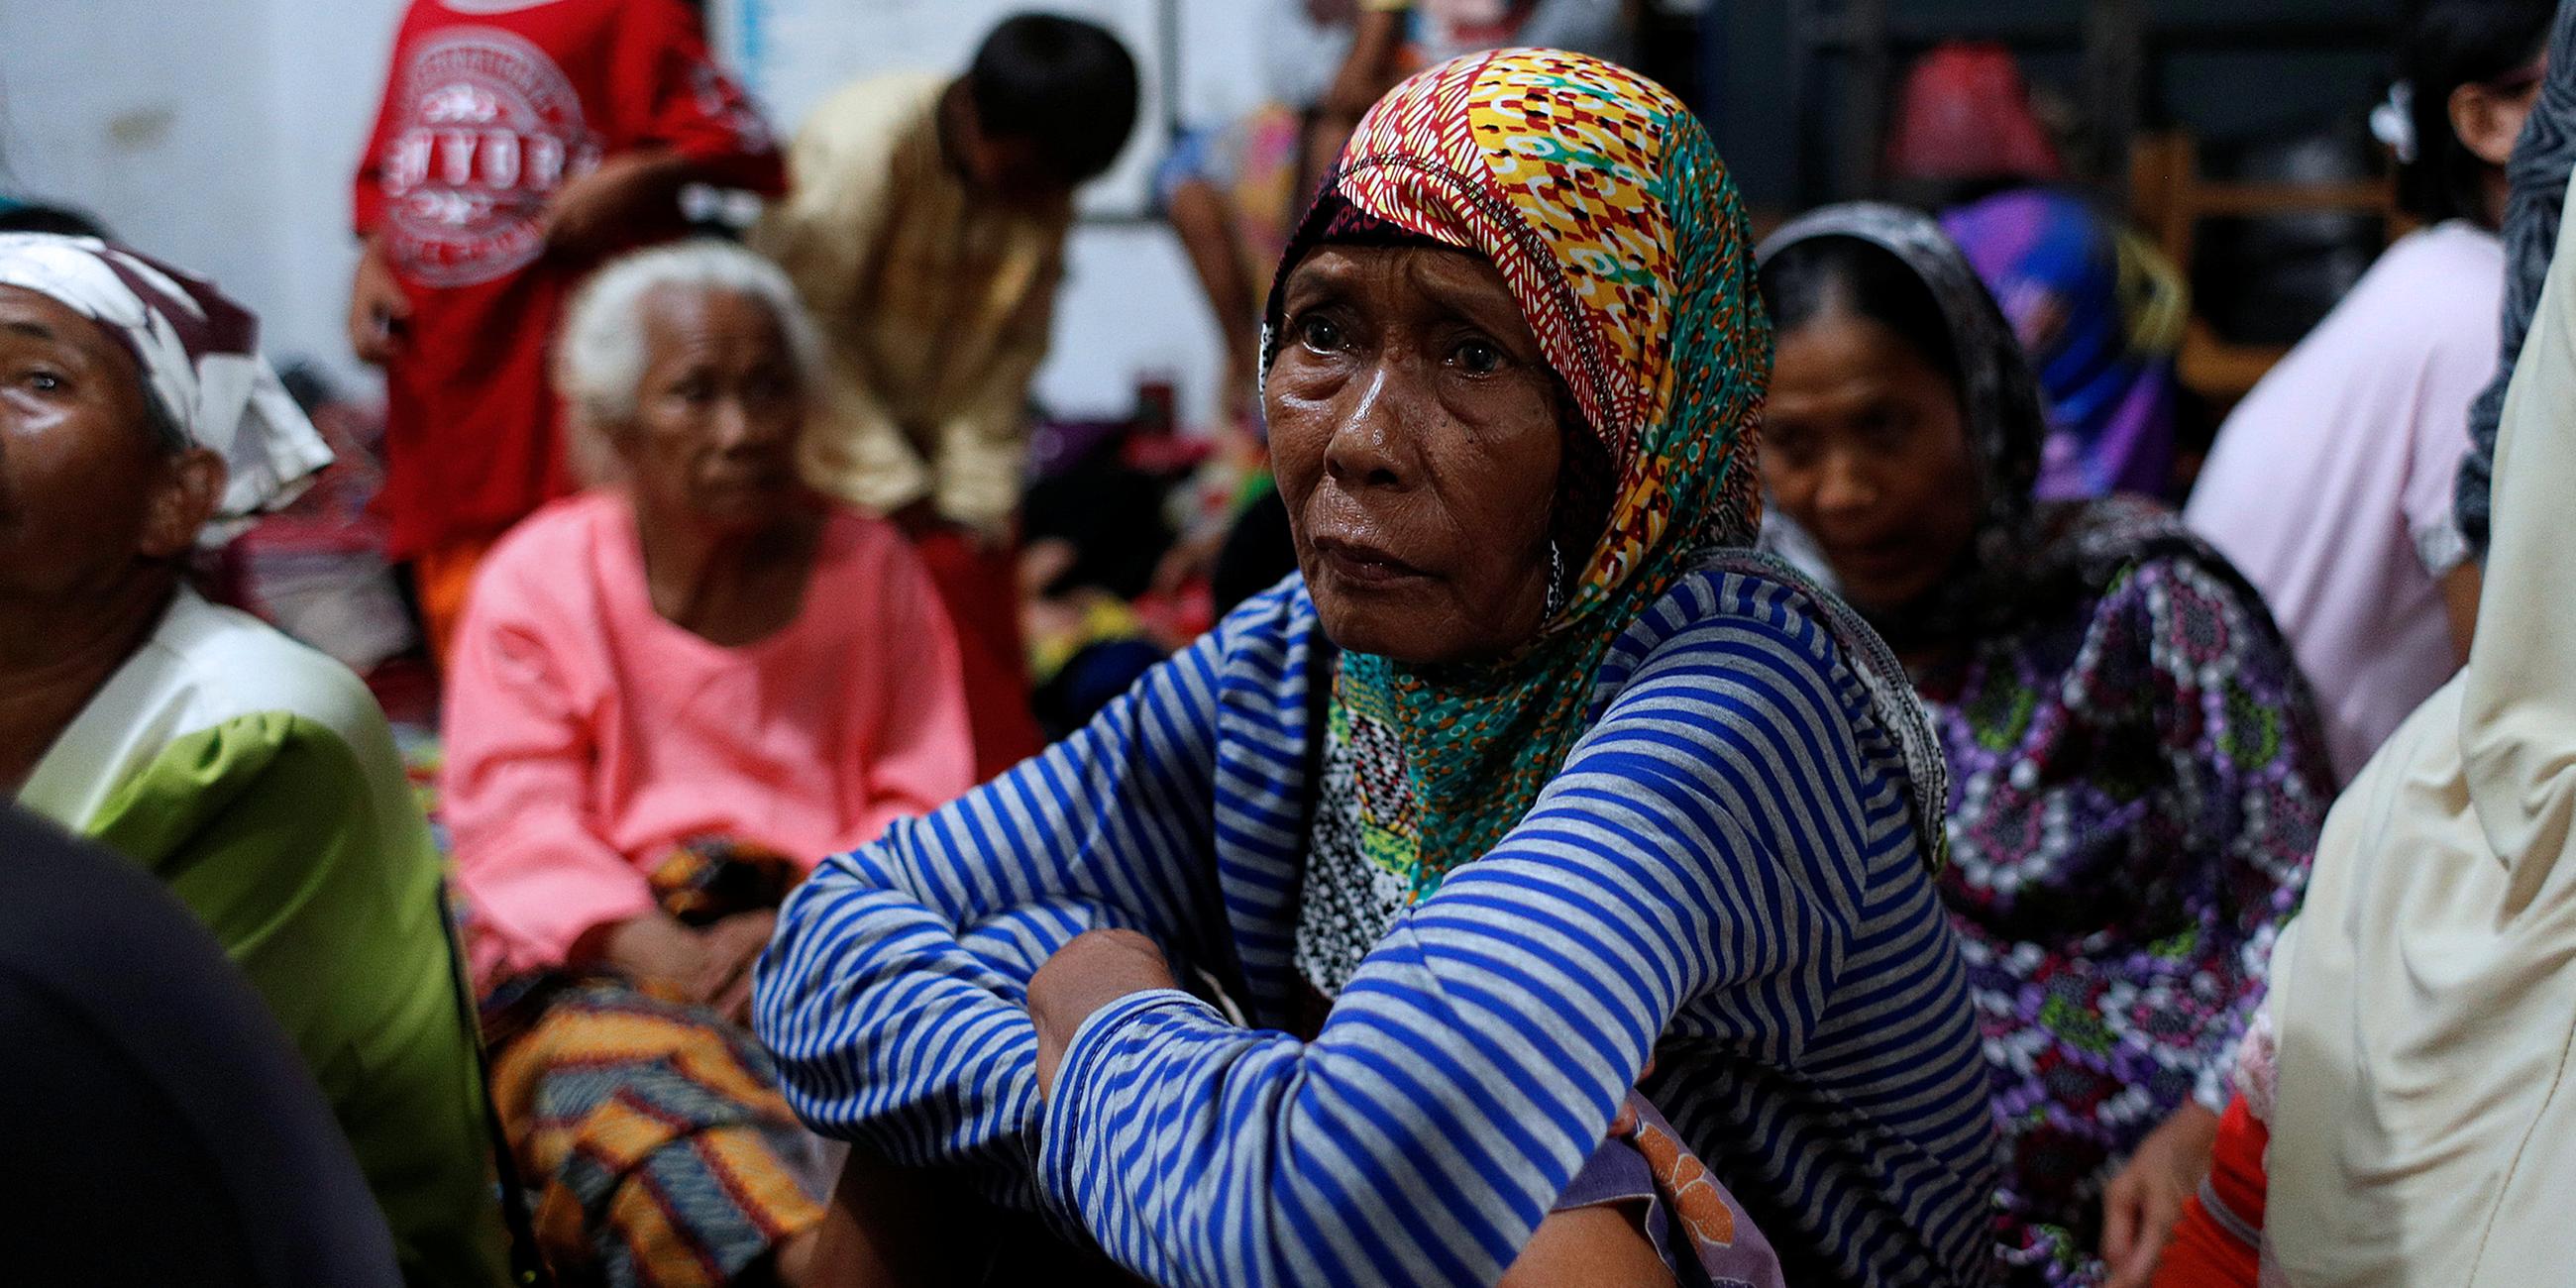 Archiv: Menschen in einem Evakuierungszentrum nach einem Tsunami in Indonesien, aufgenommen am 25.12.2018